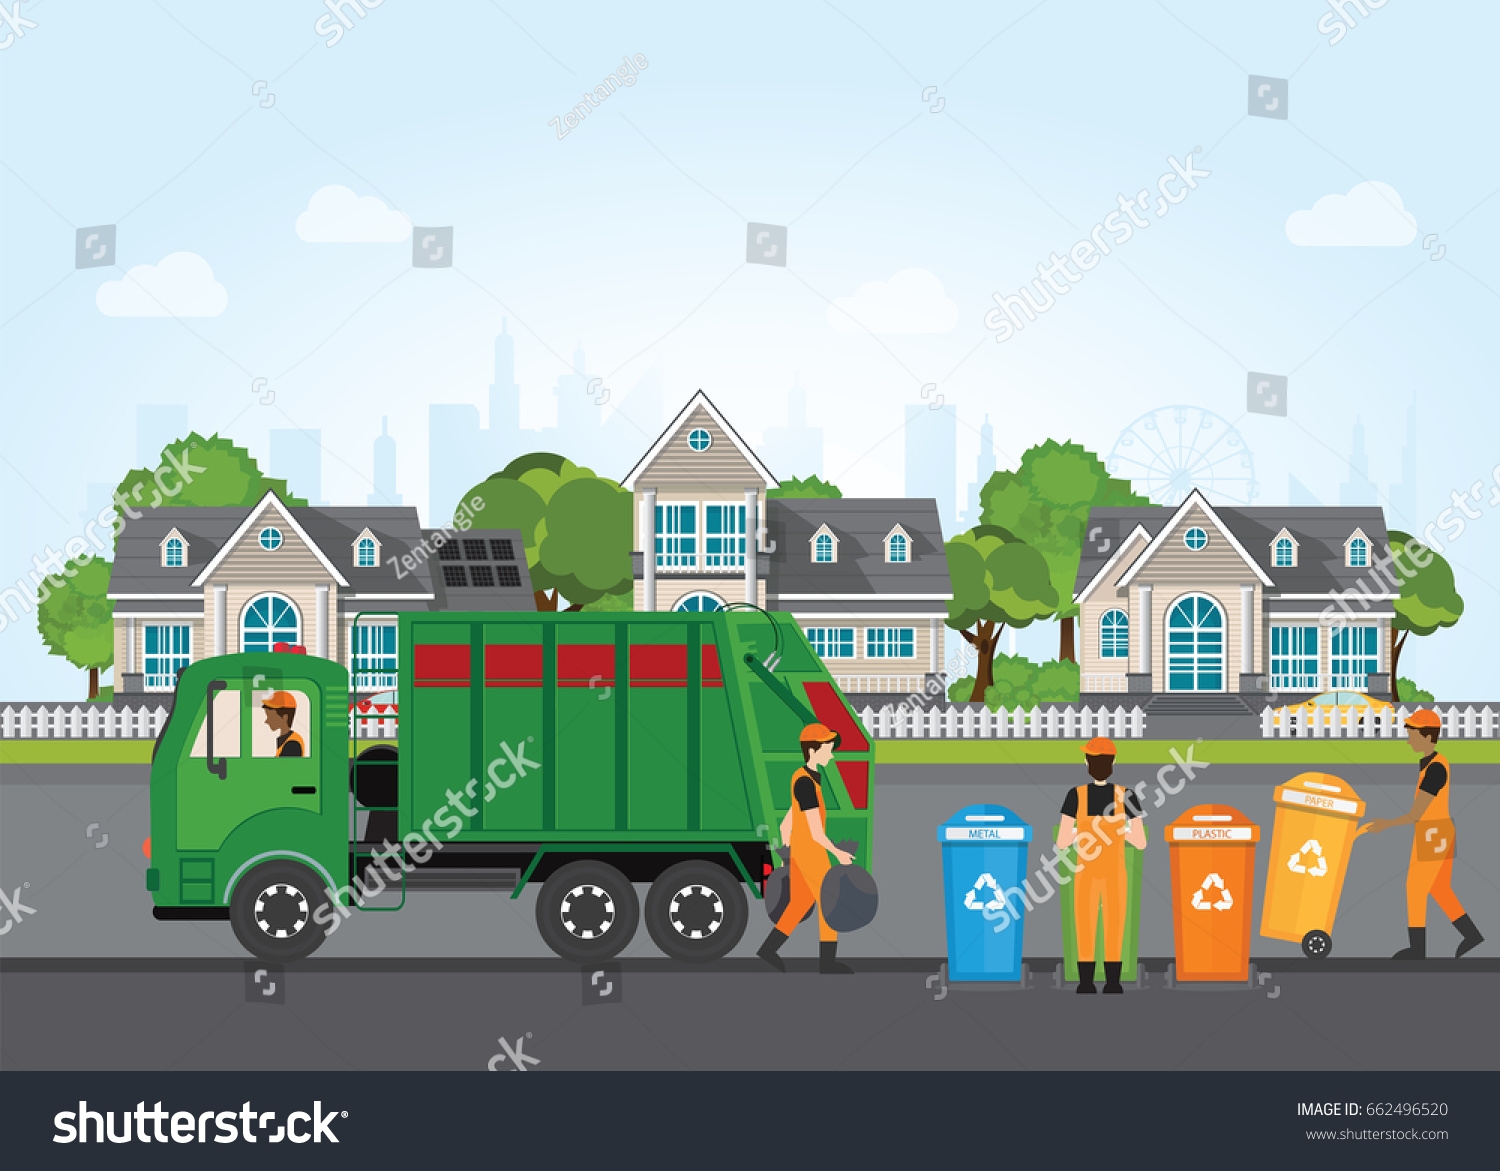 村の風景の背景にごみ収集車とごみ収集車を使った都市のごみリサイクルのコンセプト フラットデザインのベクターイラスト のベクター画像素材 ロイヤリティ フリー